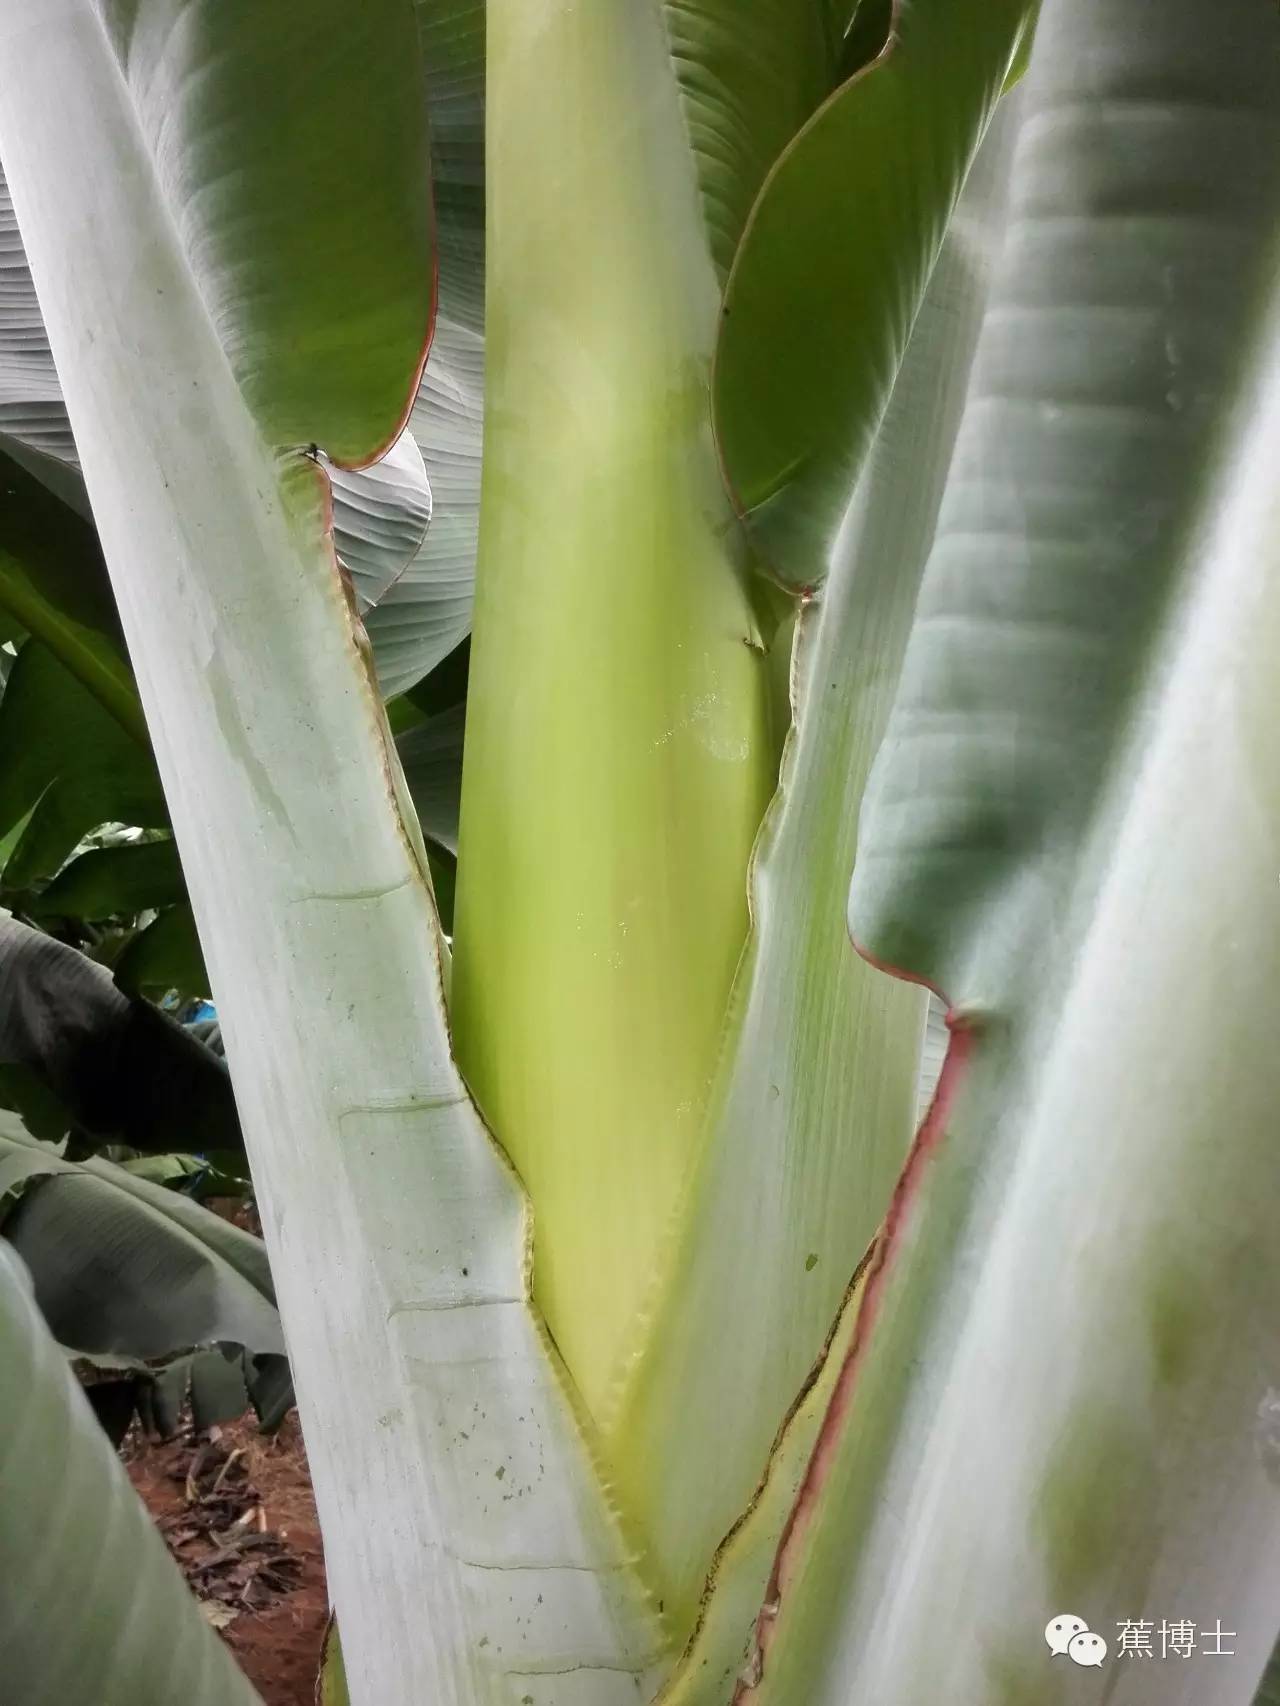 【解密】图解香蕉果实成长过程